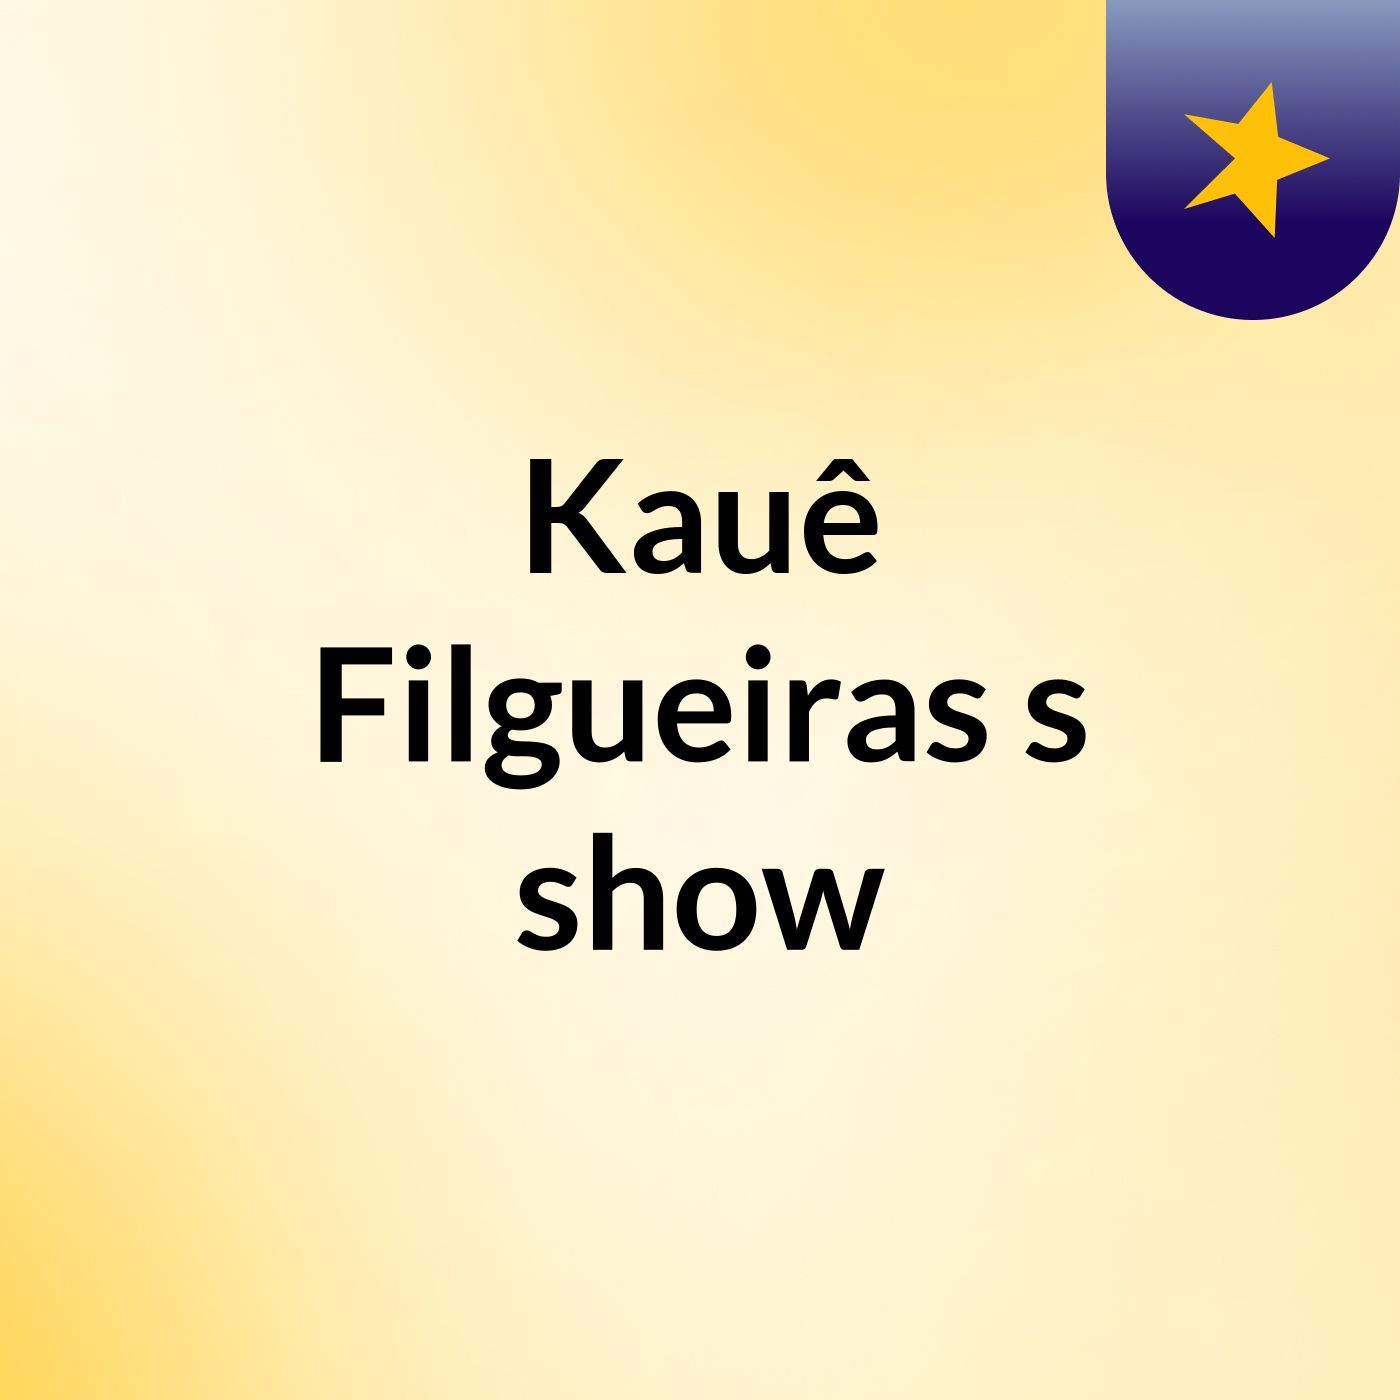 Kauê Filgueiras's show